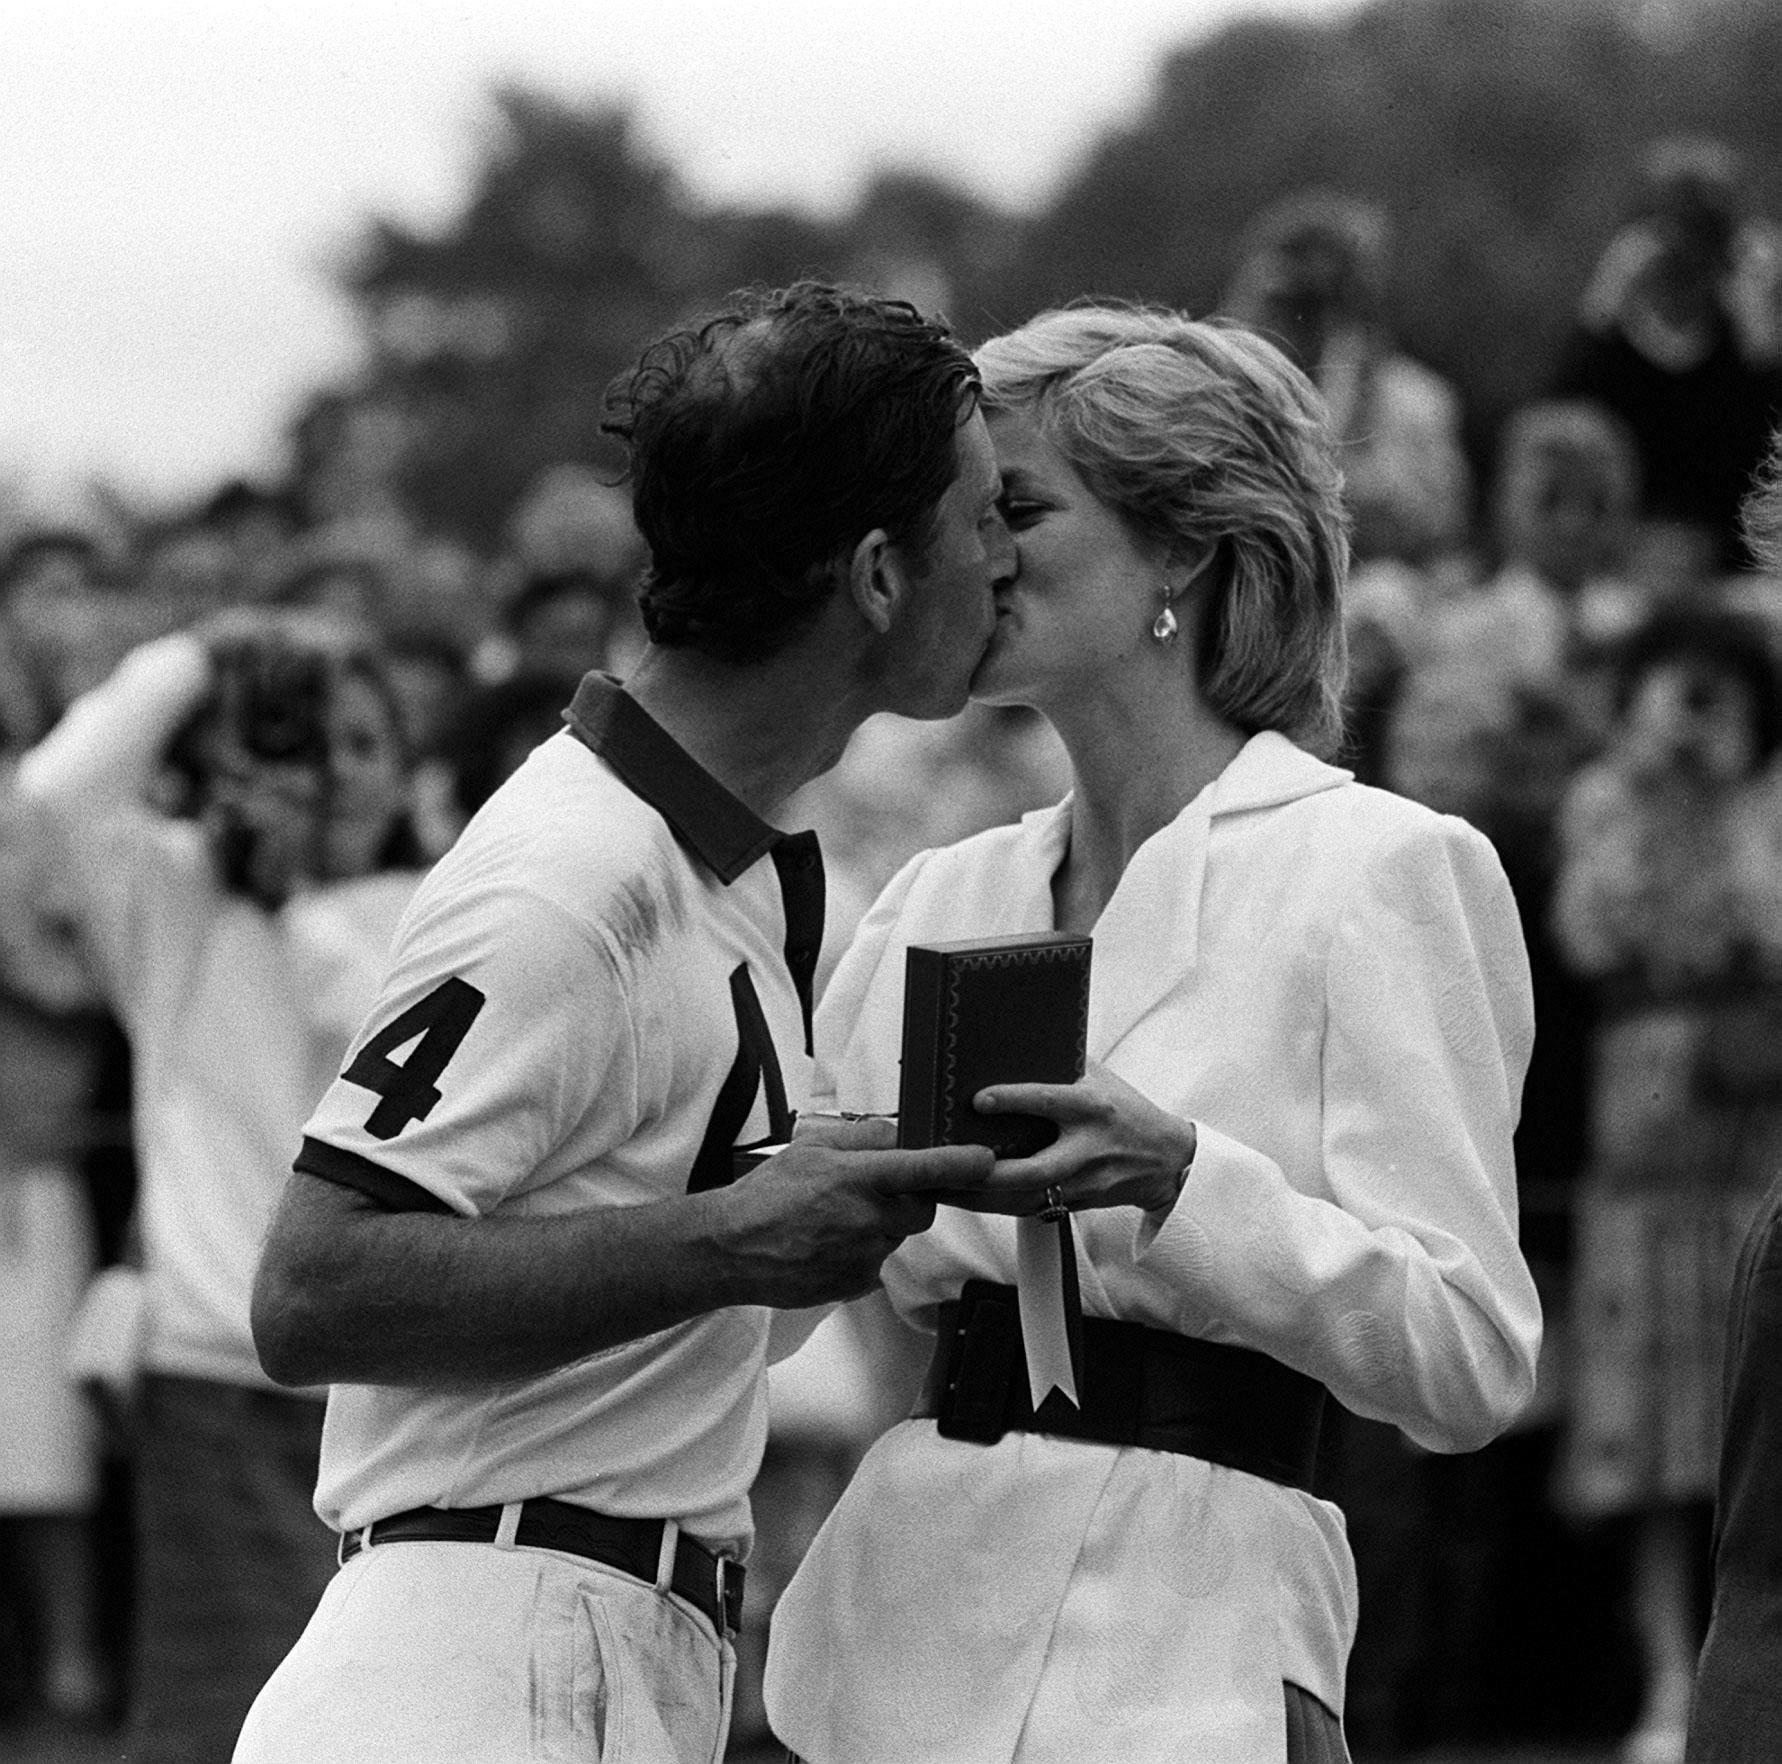 SPORTY SMASK: Charles har vært aktiv polospiller, og har ofte sporty elementer i stilen. Her får han premie og kyss fra Diana etter en polokamp i 1988. Foto: Pa Photos.